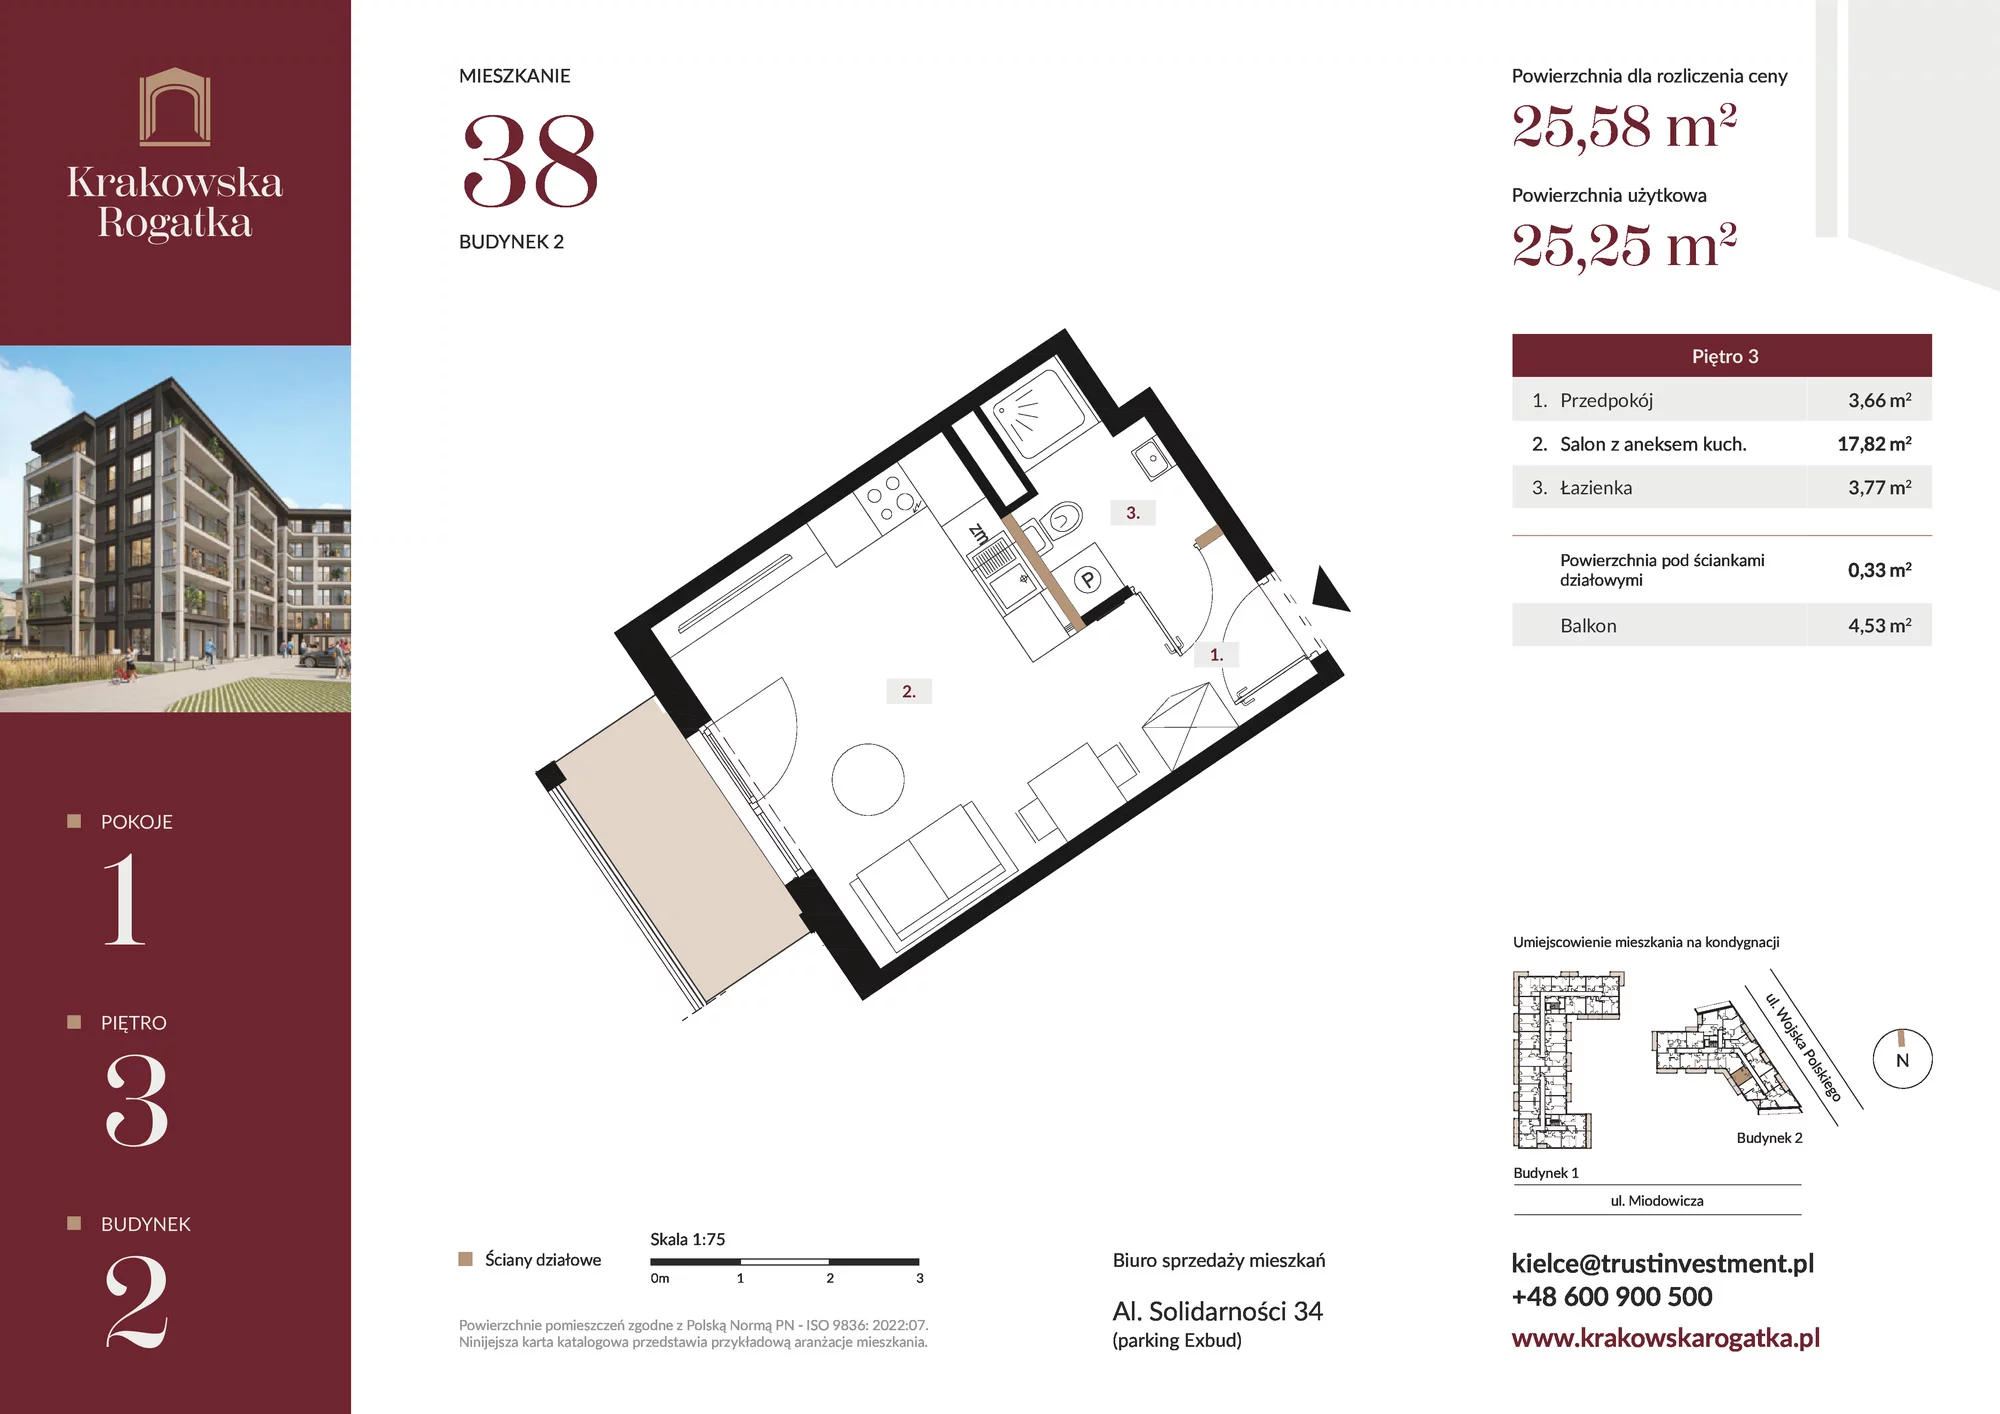 Mieszkanie 25,58 m², piętro 3, oferta nr Budynek 2 Mieszkanie 38, Krakowska Rogatka, Kielce, ul. Miodowicza 1